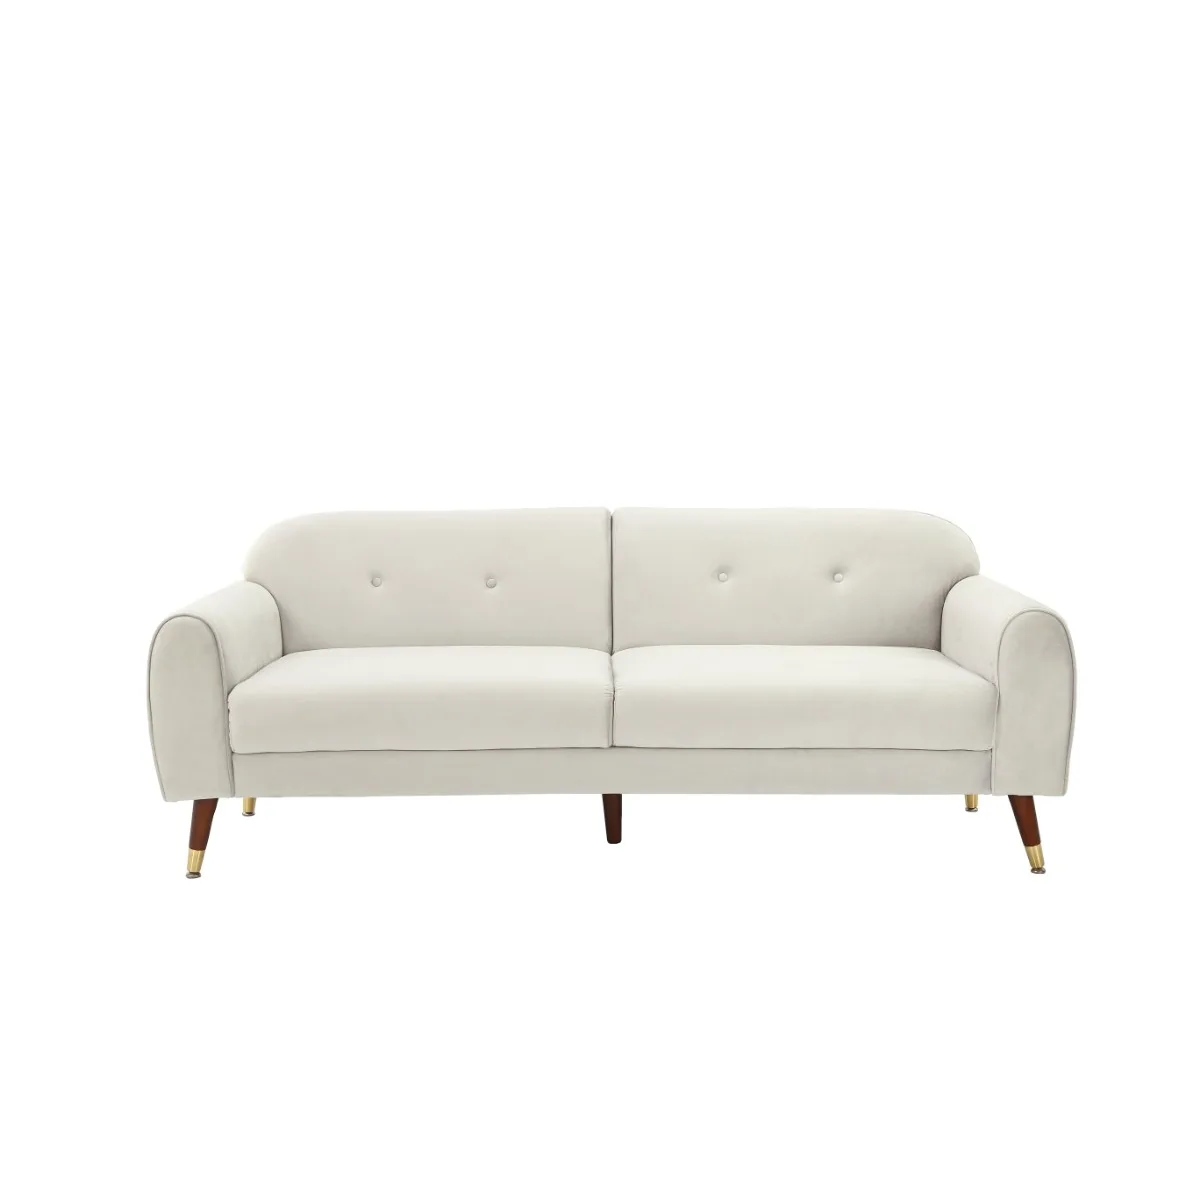 75.5”Mid-century Velvet Sofa,Morden Upholstery 2-seater Velvet Sofa with Armrest for Livingroom(Beige) 6